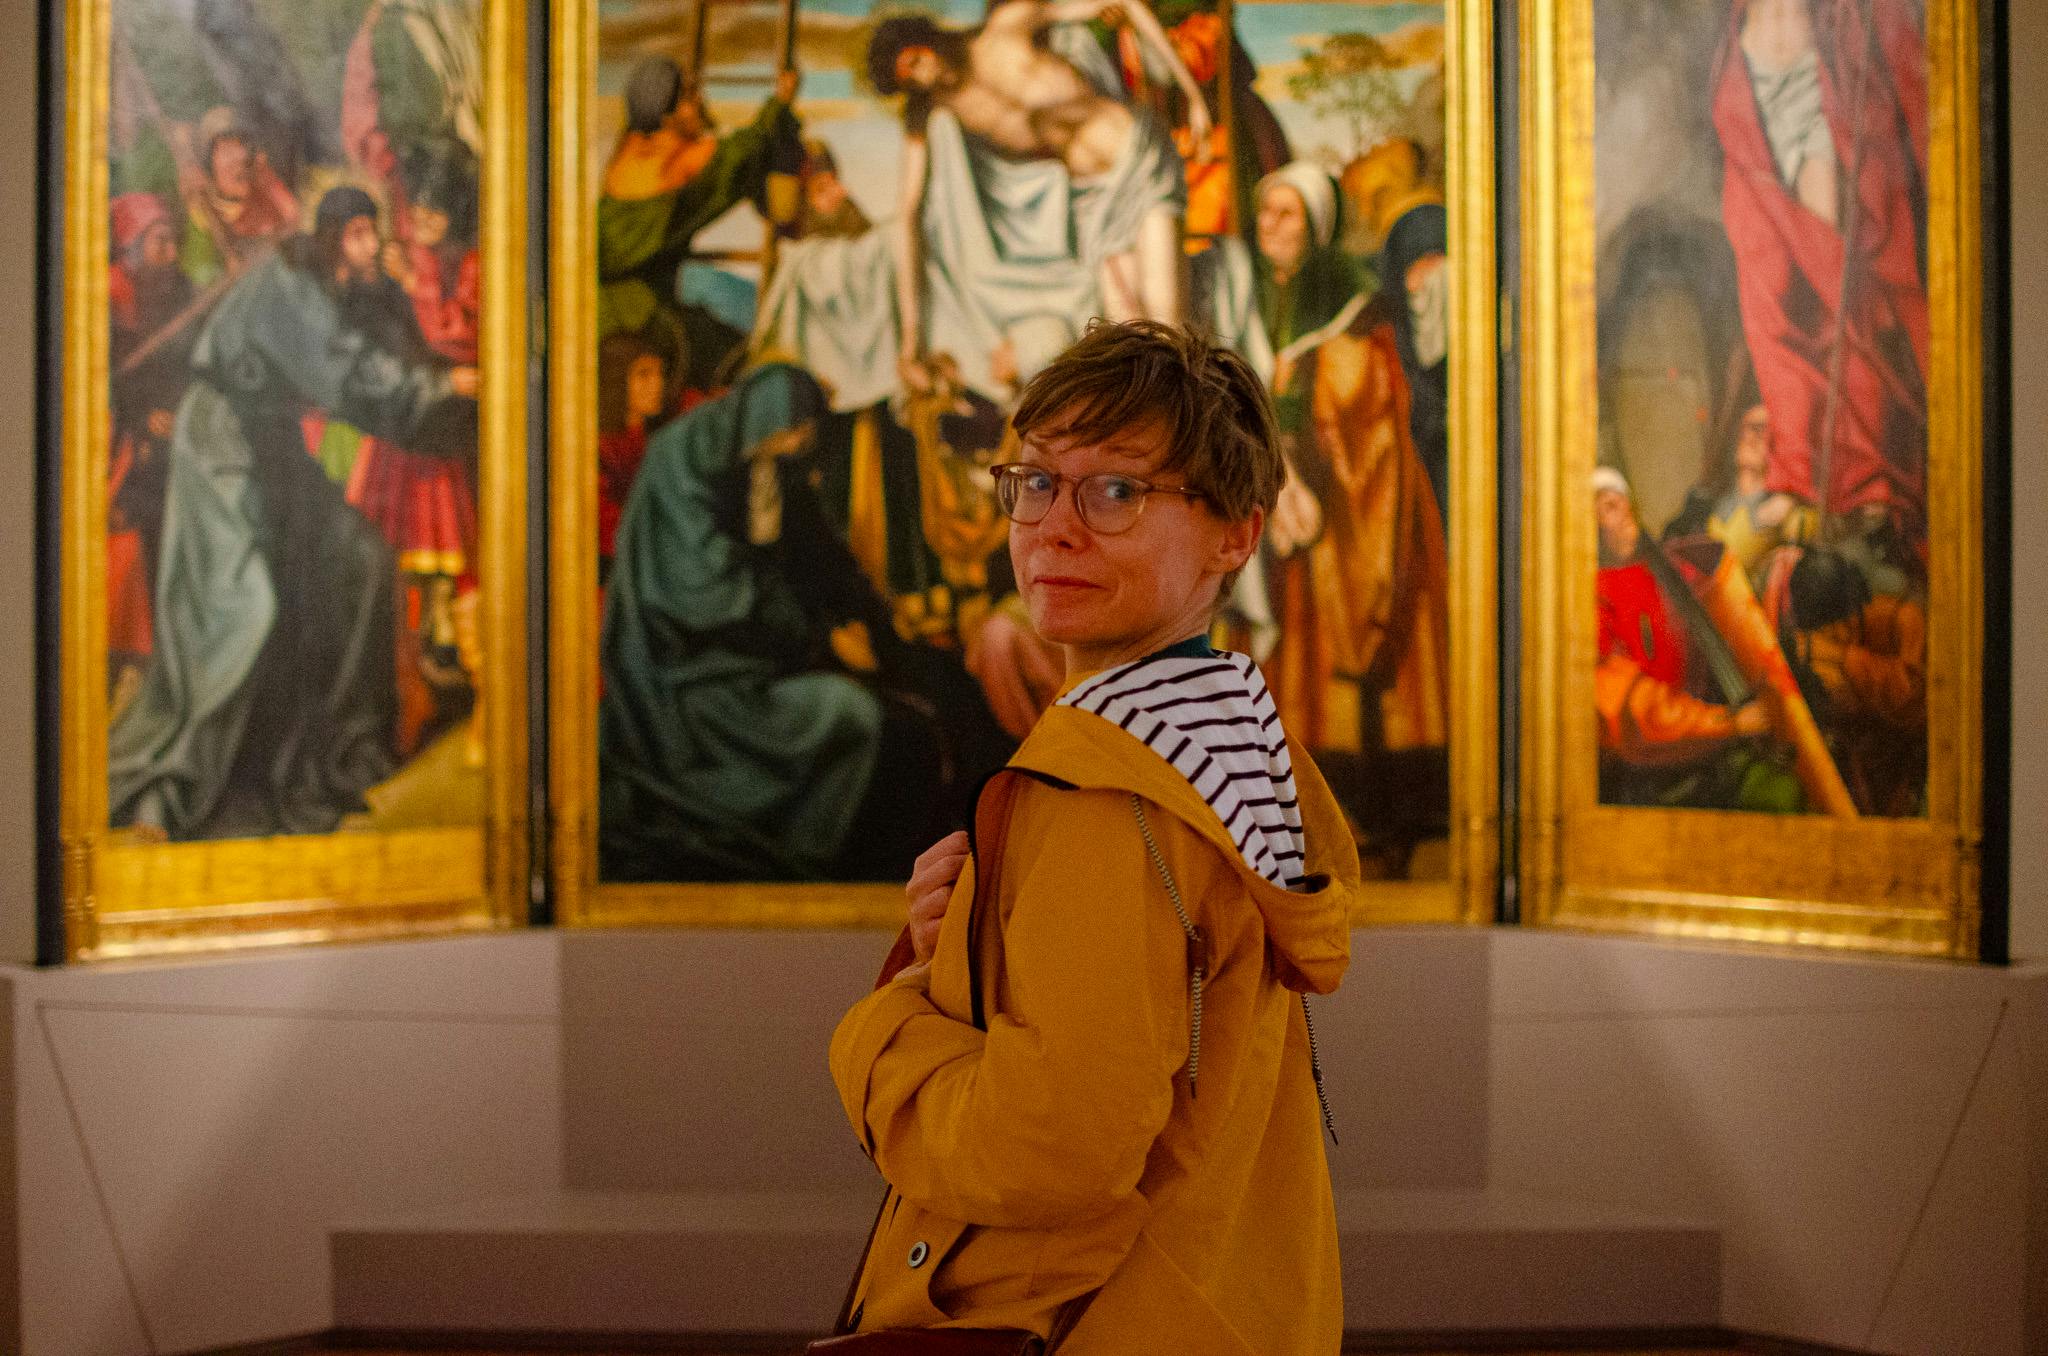 Kobieta na tle obrazu patrzy się w kamerę. Ma na sobie żółtą kurtkę. Muzeum Sztuki Starożytnej.